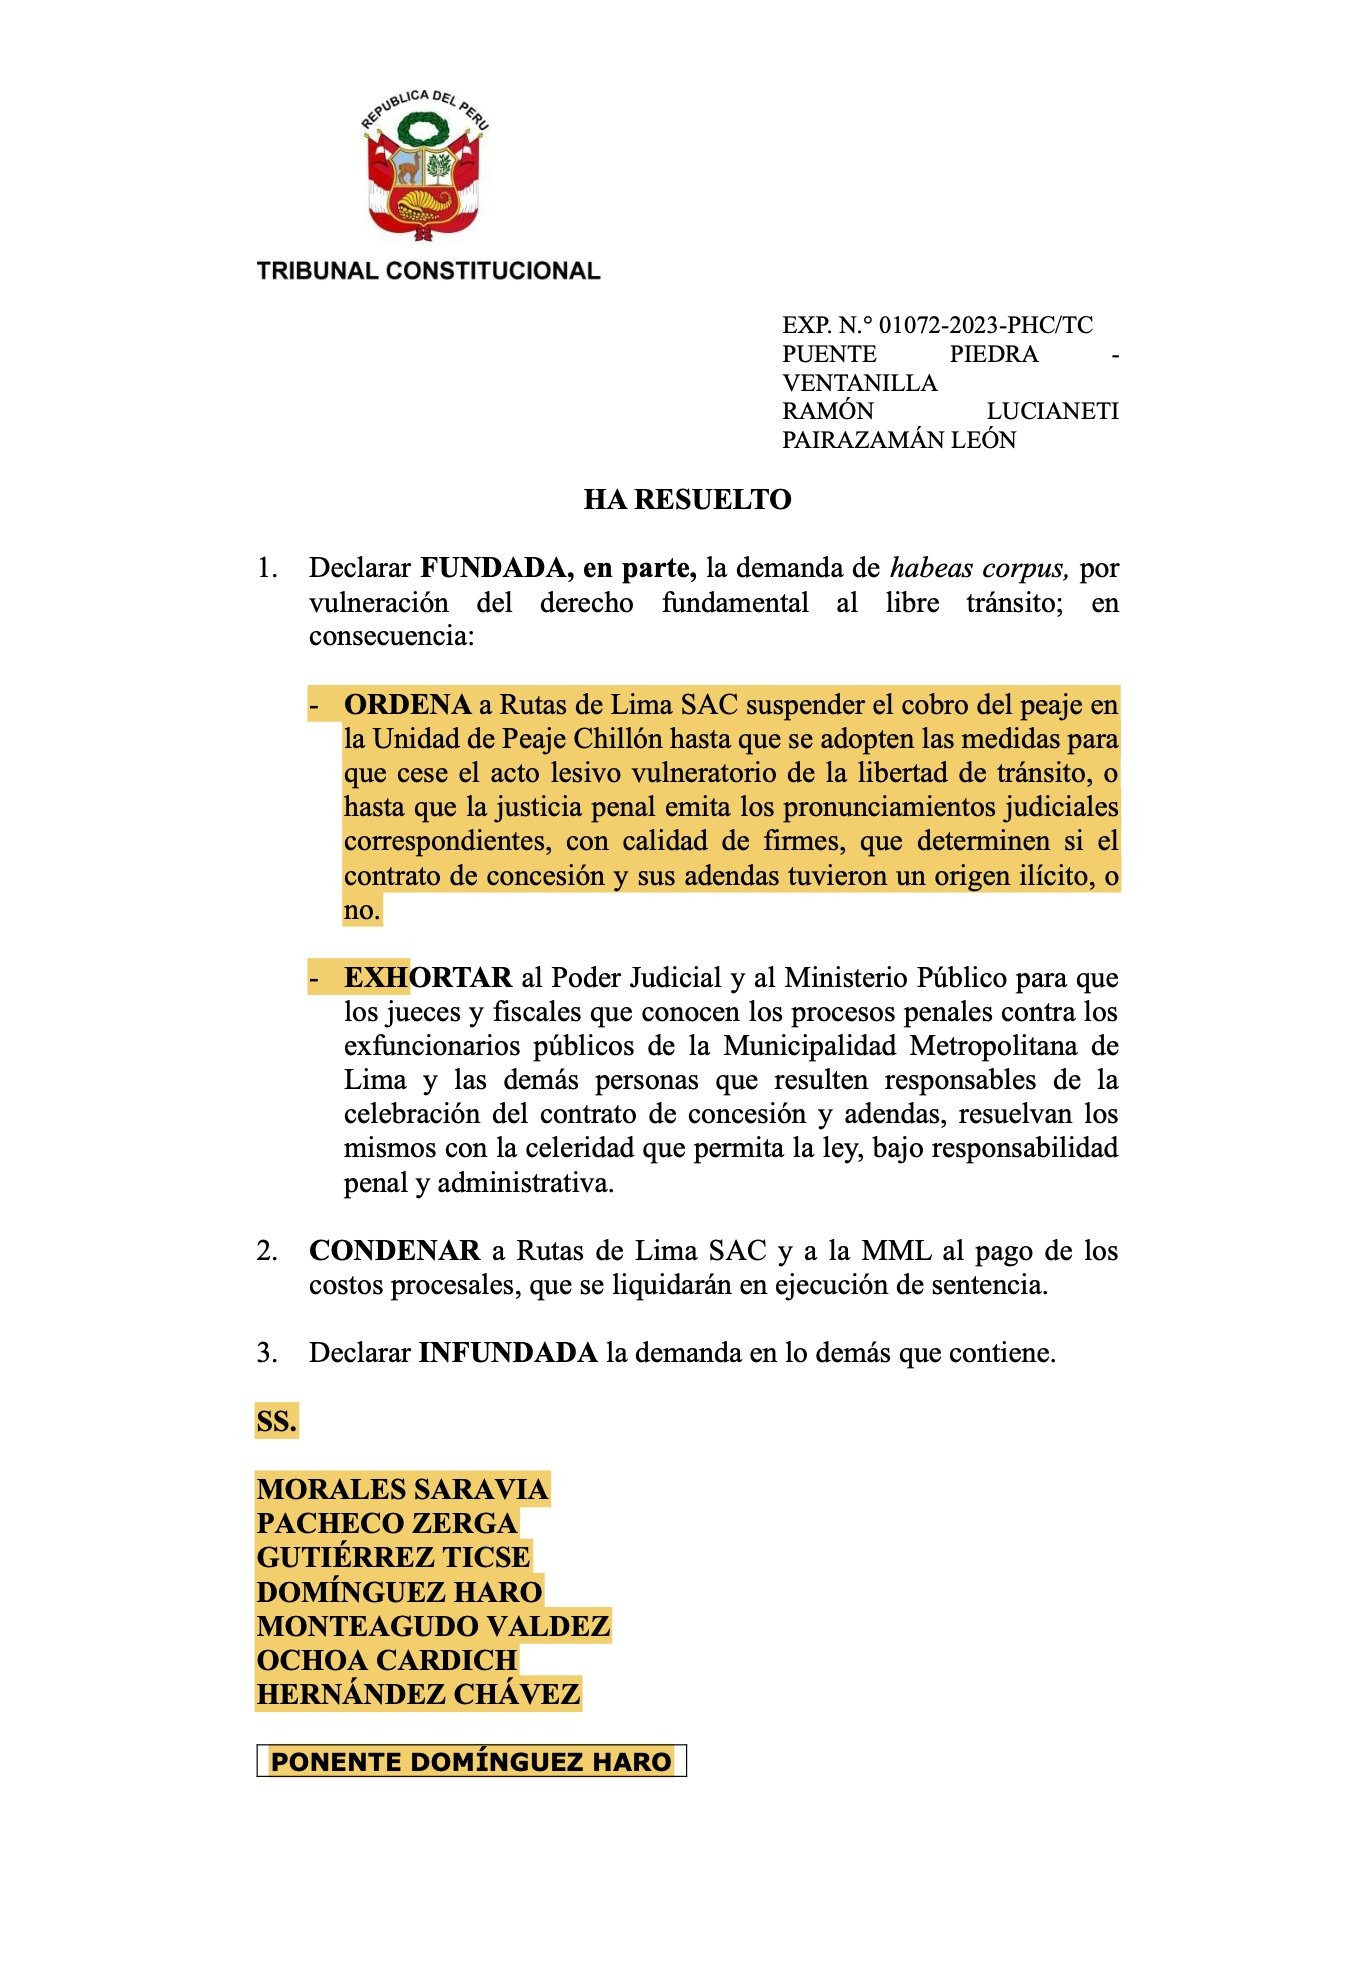 Tribunal Constitucional ordena a Rutas de Lima suspender cobro de peaje en Chillón